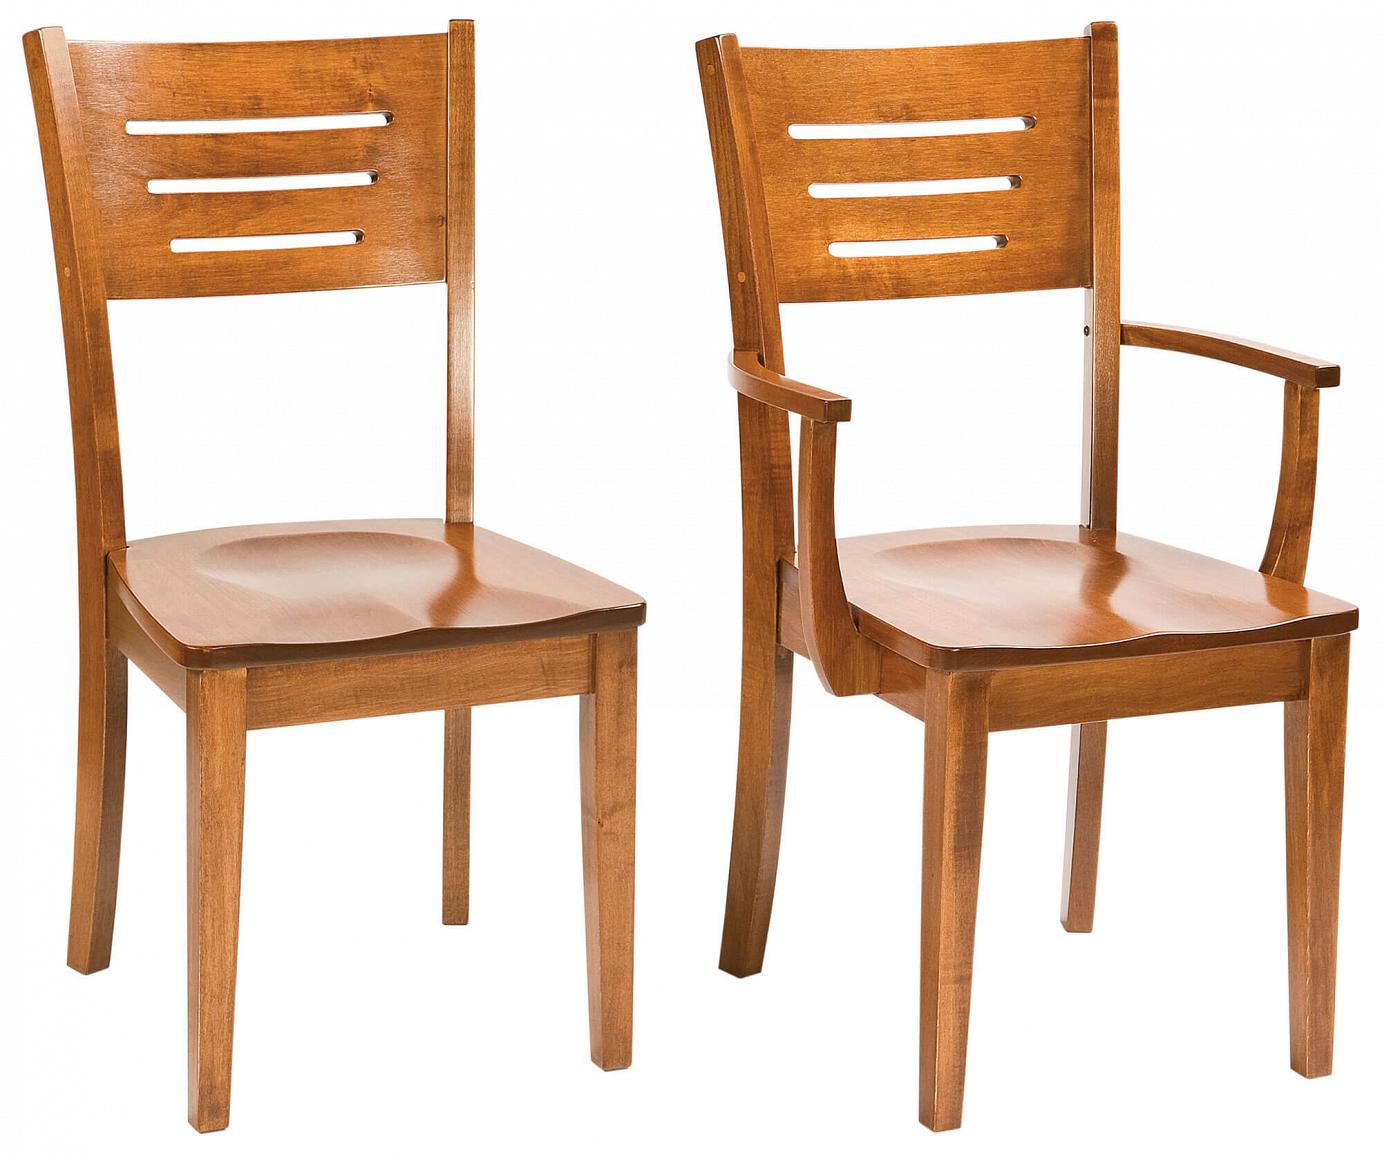 RH Yoder Jansen Chairs